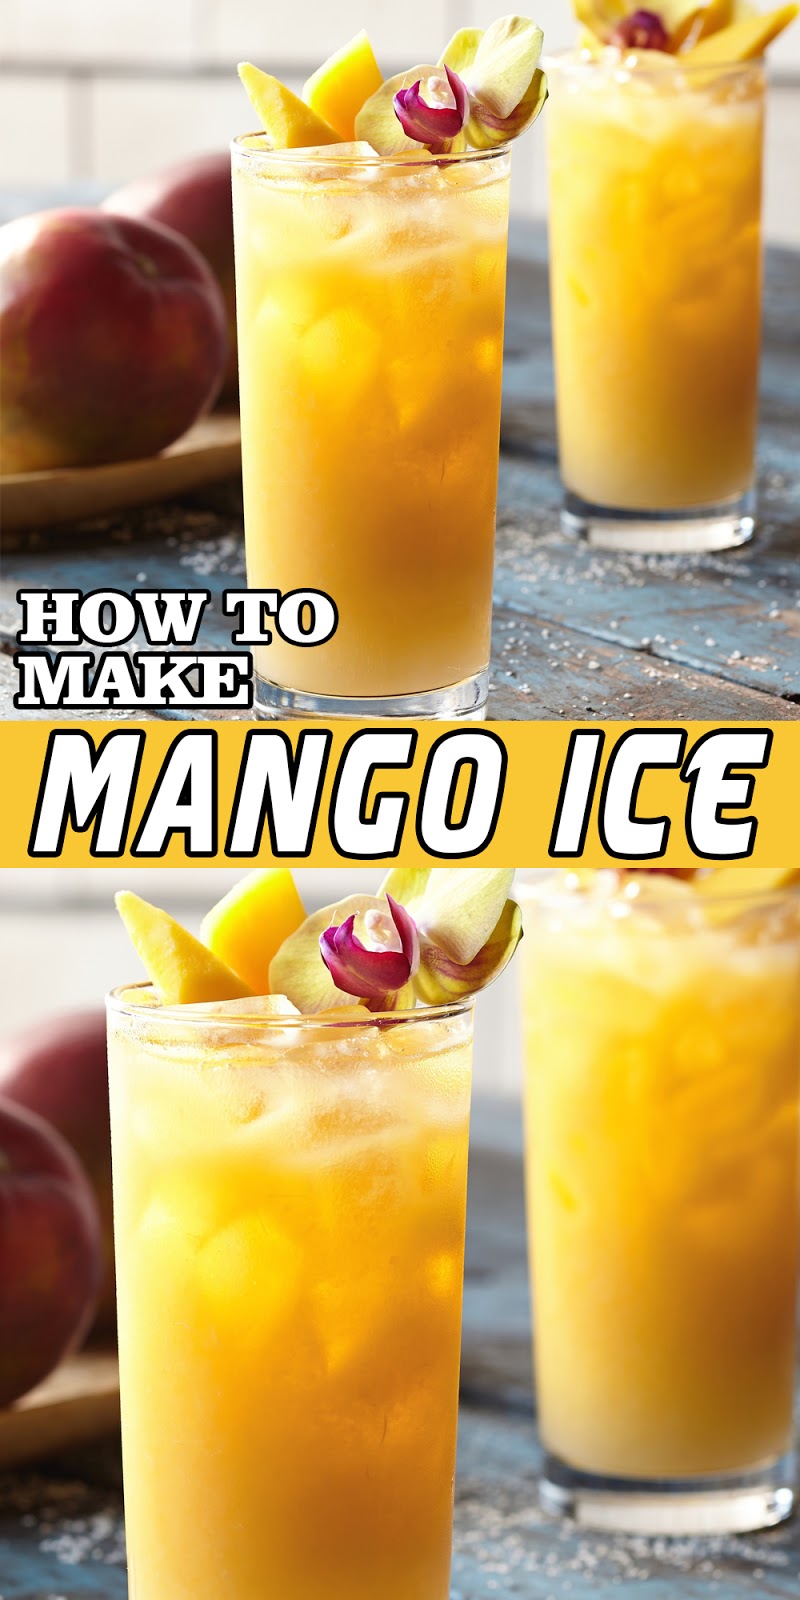 MANGO ICE